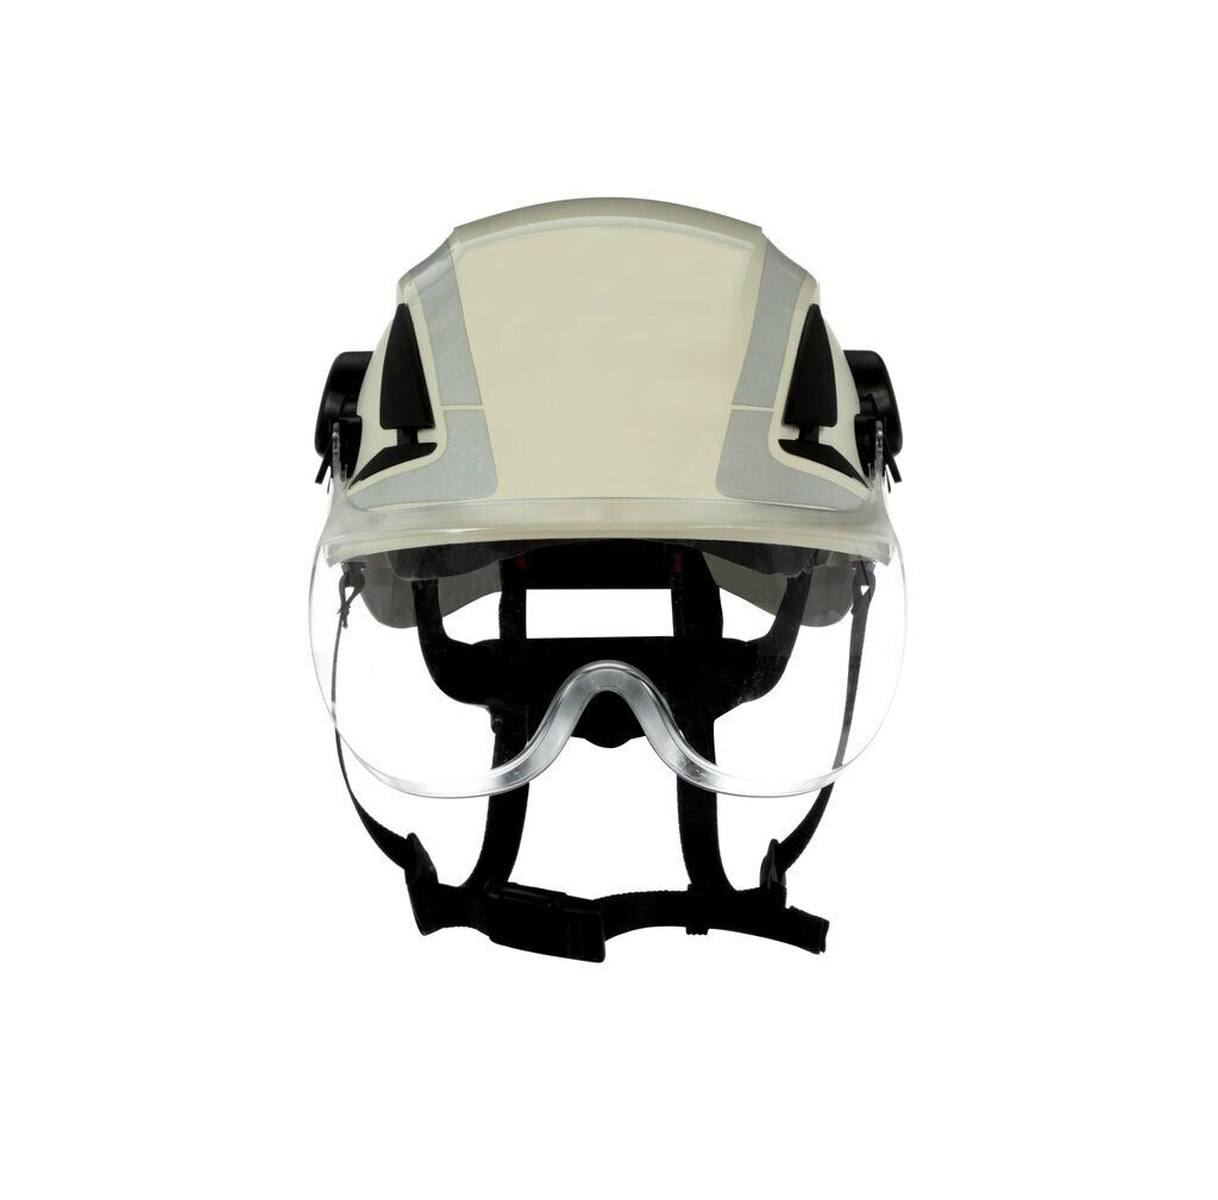 3M visera corta X5-SV01-CE para cascos de seguridad X5000 y X5500, transparente, revestimiento antivaho y antirrayas, policarbonato